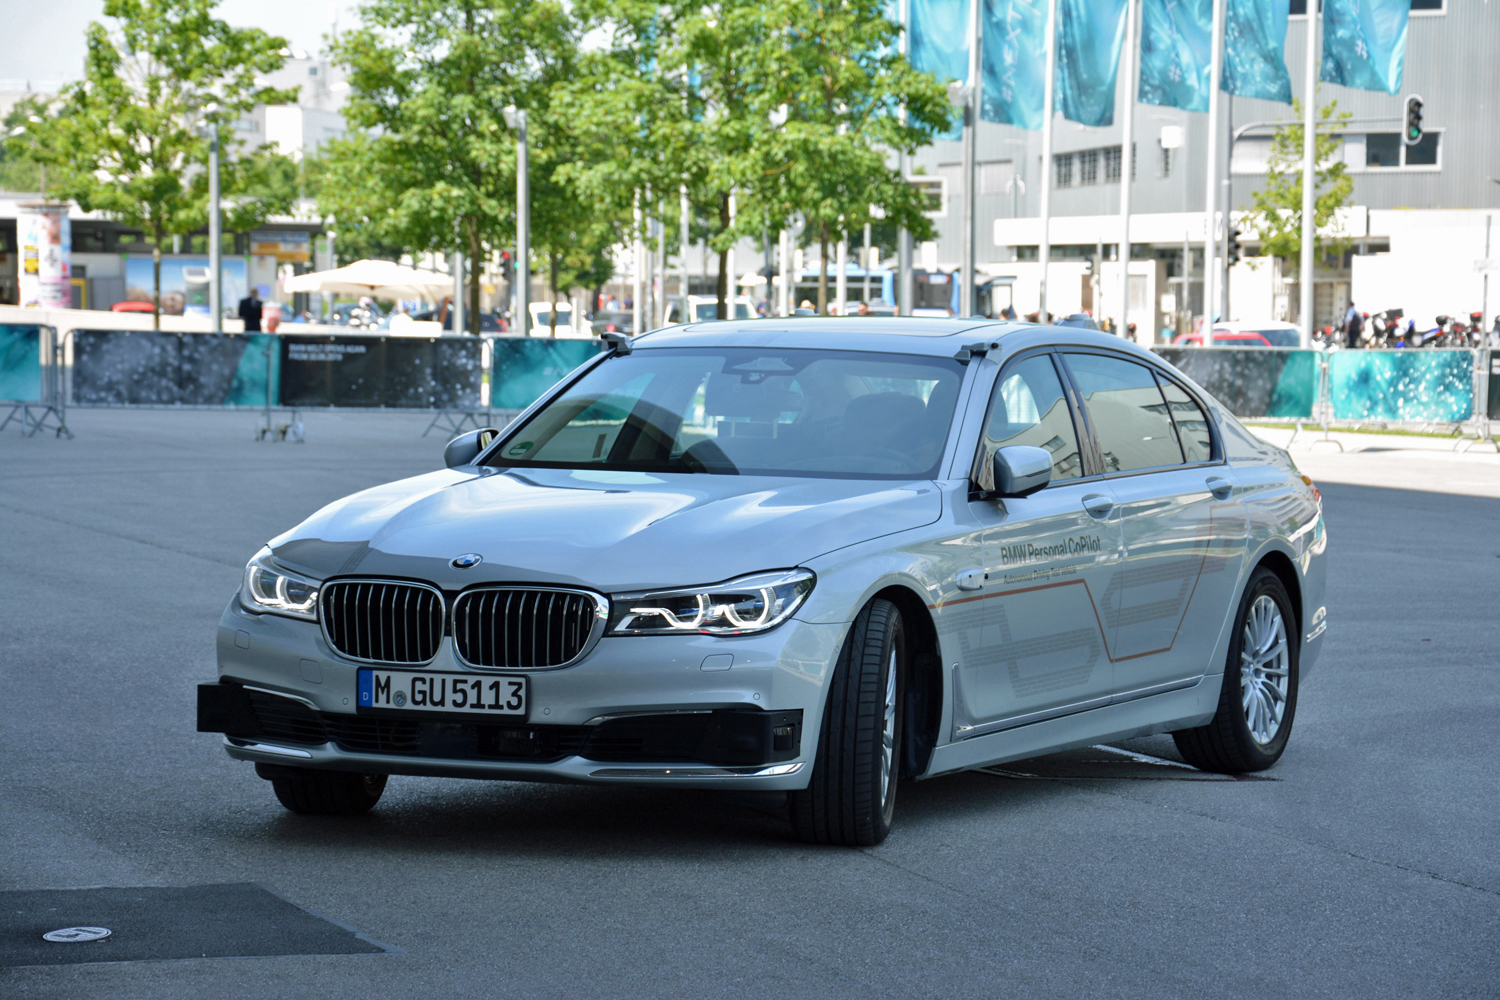 BMW autonomous 7 series